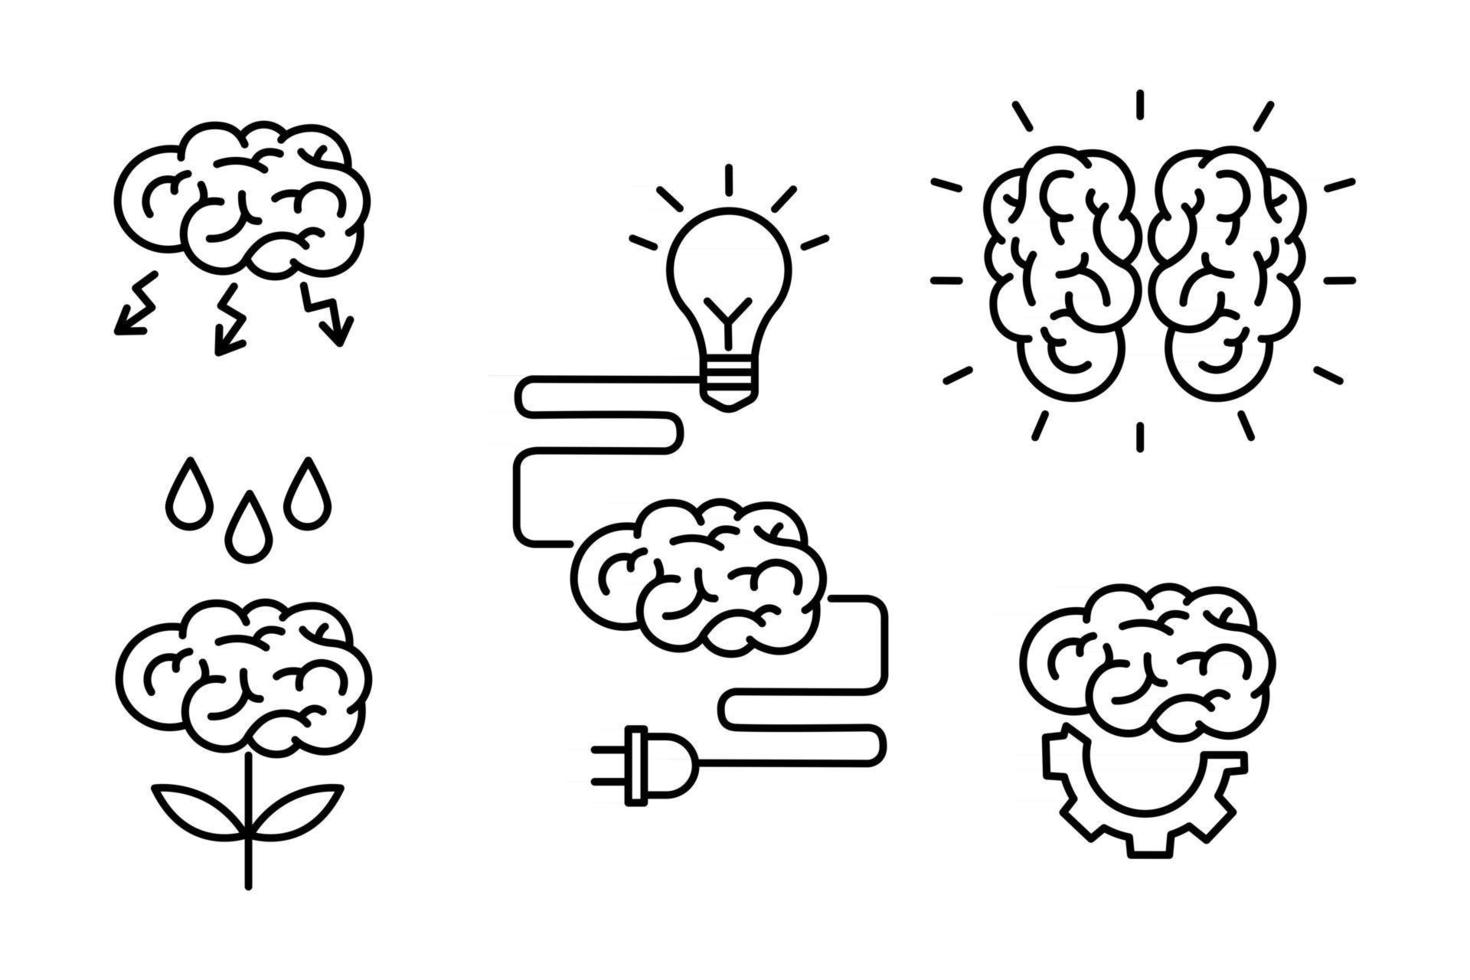 Gehirn, Brainstorming, Idee, Kreativität, Wissenskonzept stellen Icons im Umrissstil ein. Sammlung von menschlichen Gehirnprozessen, Gehirnfunktionen und Emotionen. Vektor-Doodle-Illustration. vektor